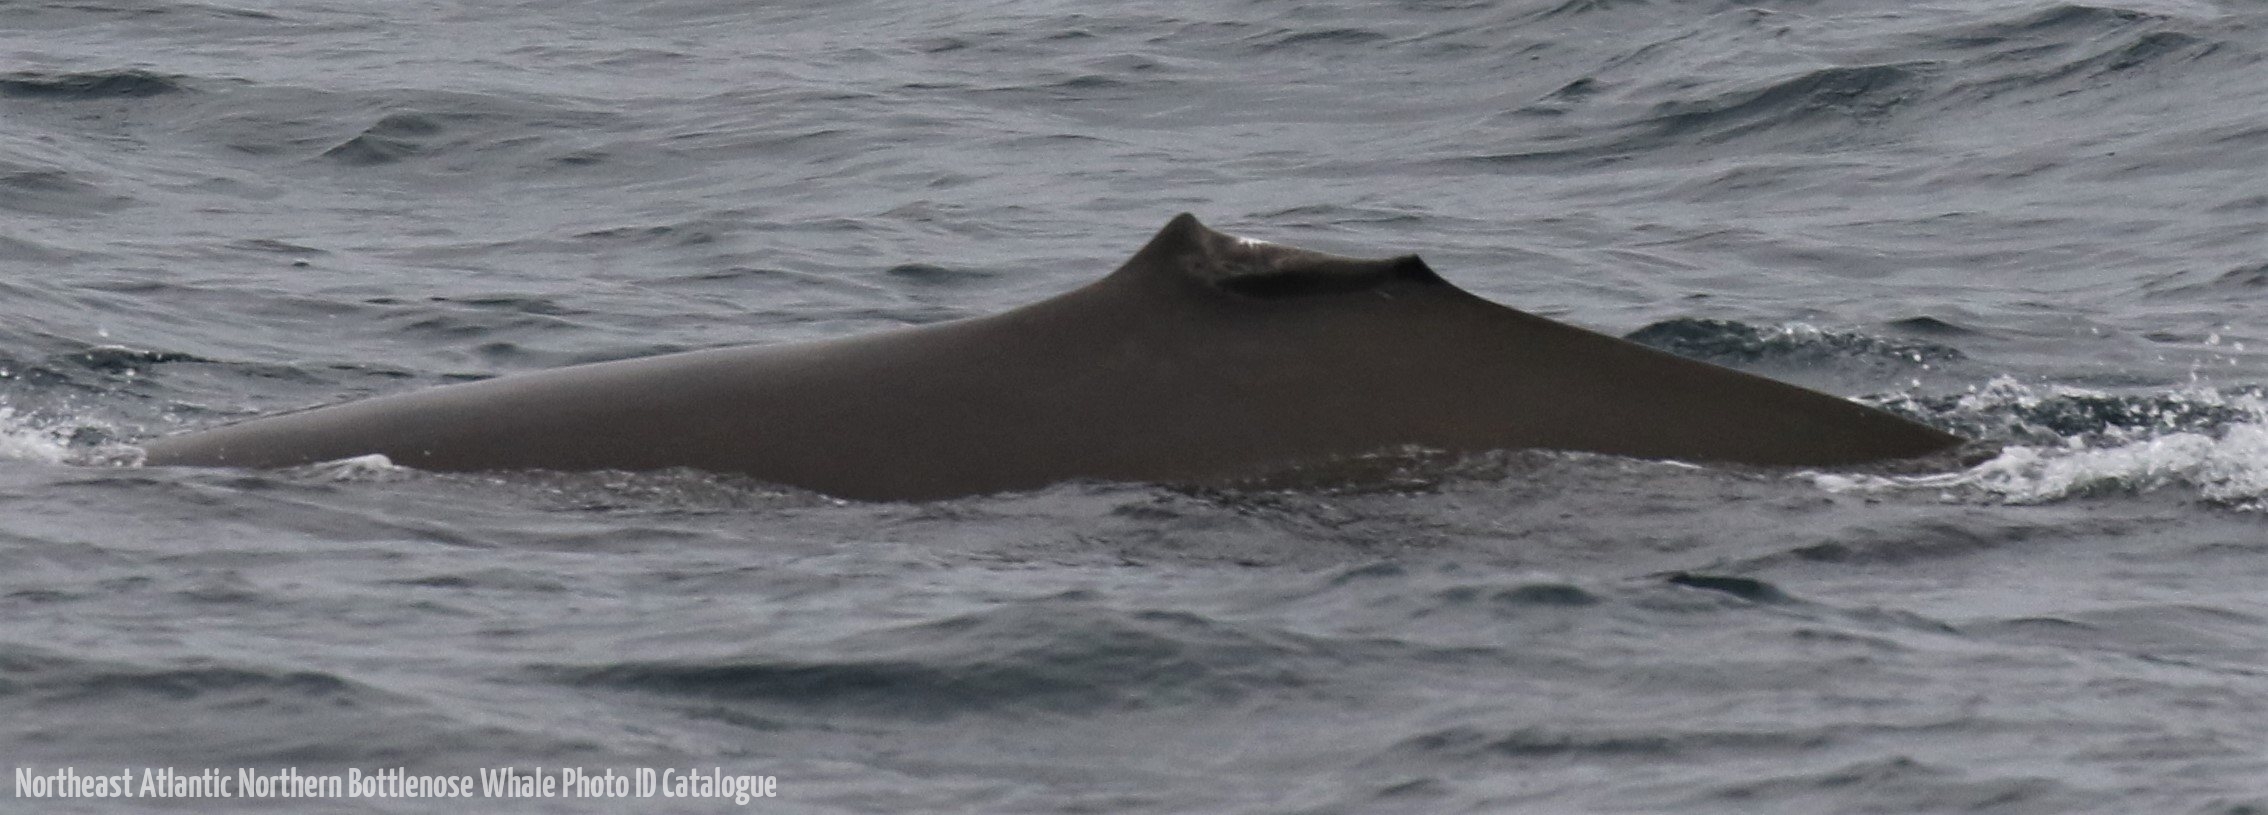 Whale ID: 0193,  Date taken: 20-06-2016,  Photographer: Eilidh Siegal